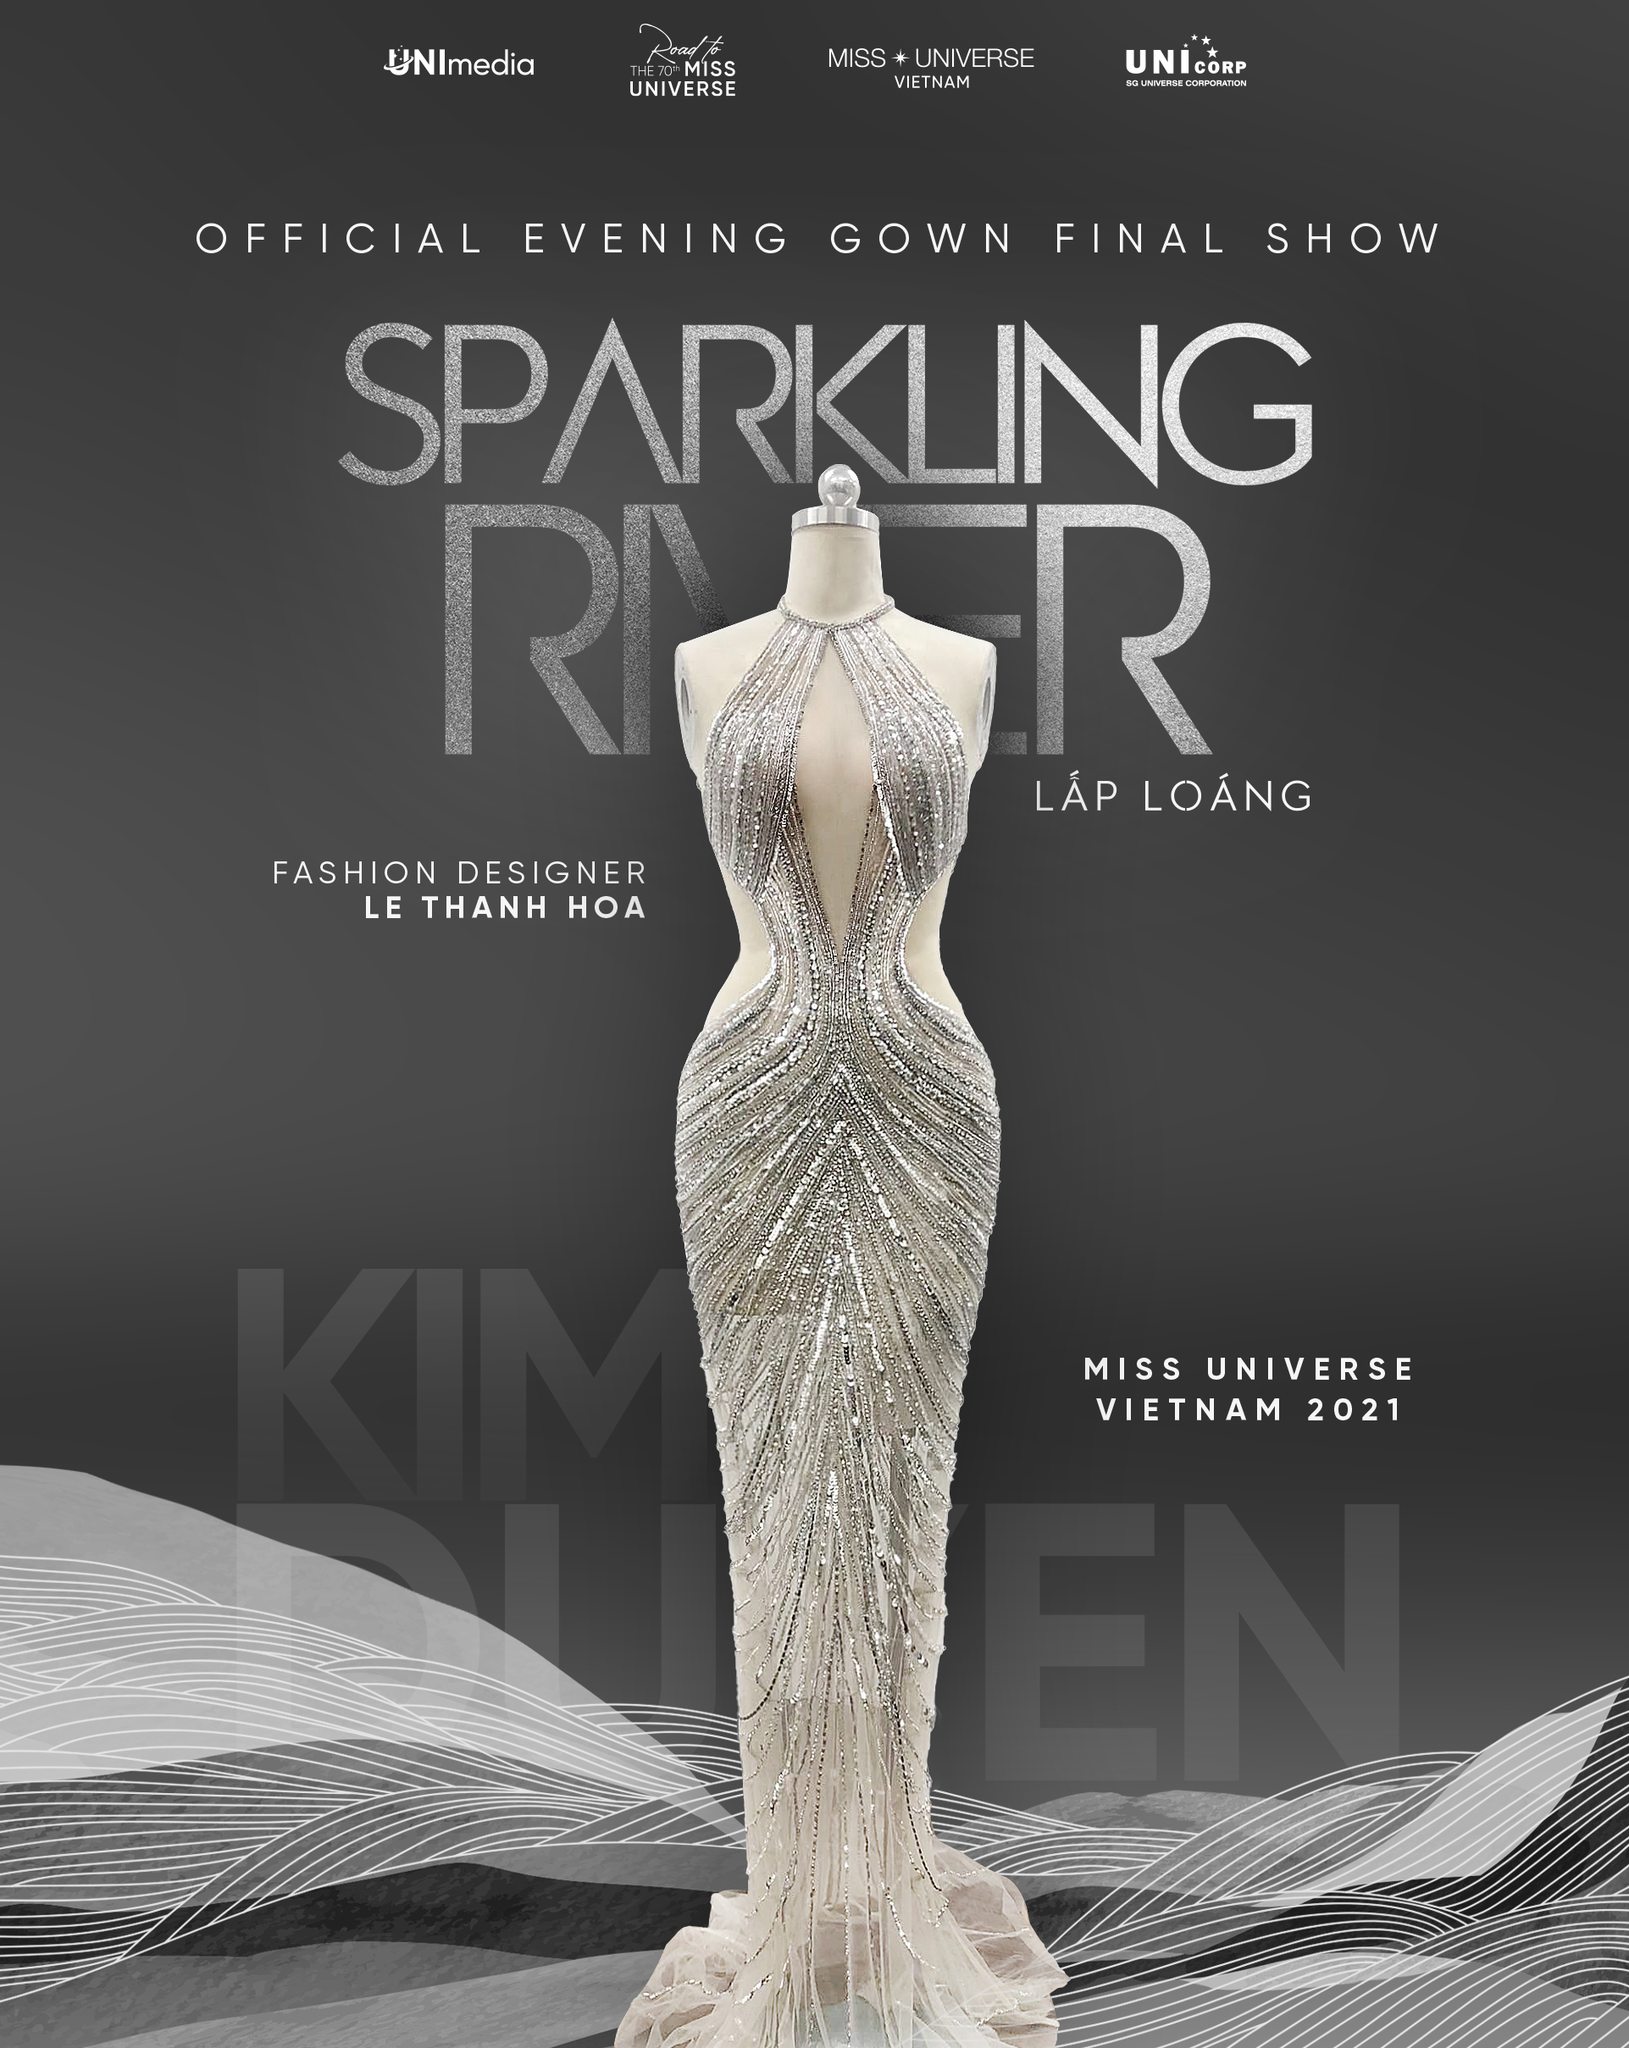 “Sparkling River Gown' – 'Lấp loáng' là thiết kế đồng hành cùng Kim Duyên tại đêm Chung kết Miss Universe 2021.